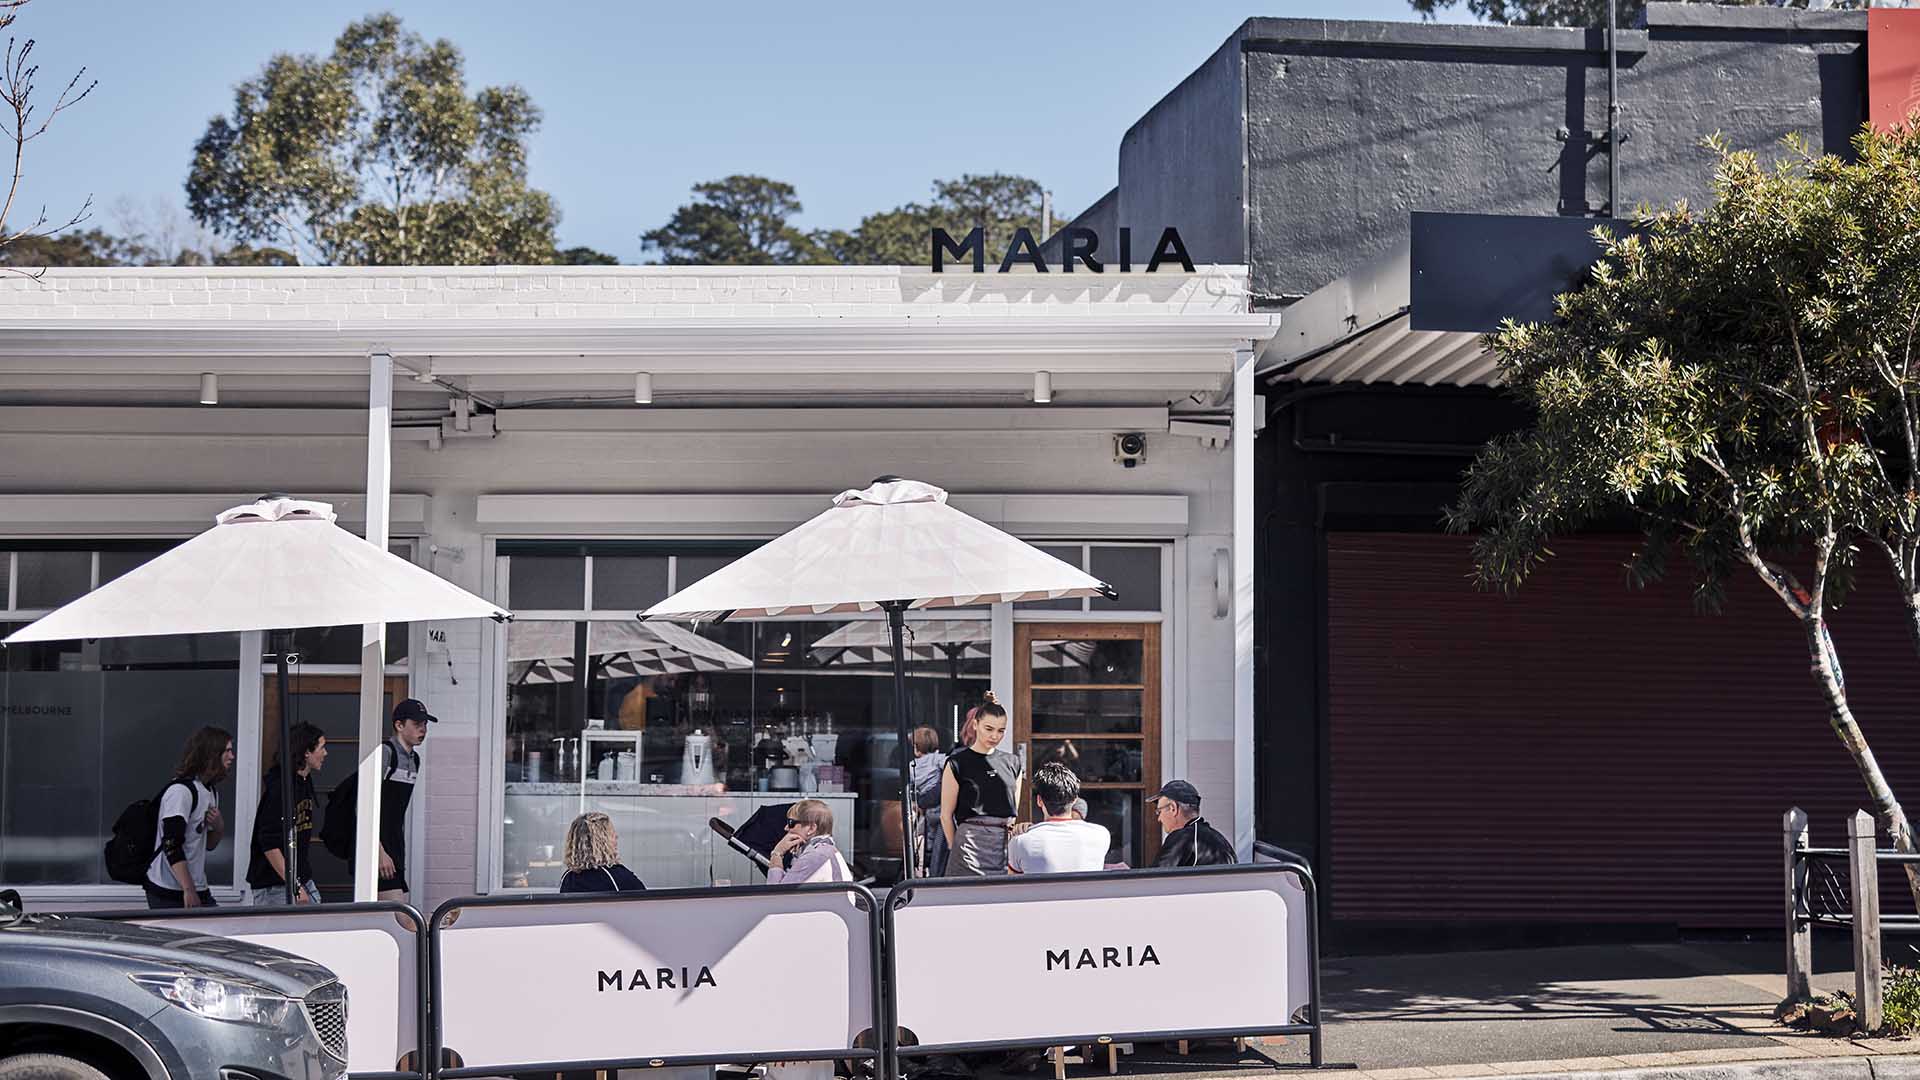 Maria Cafe